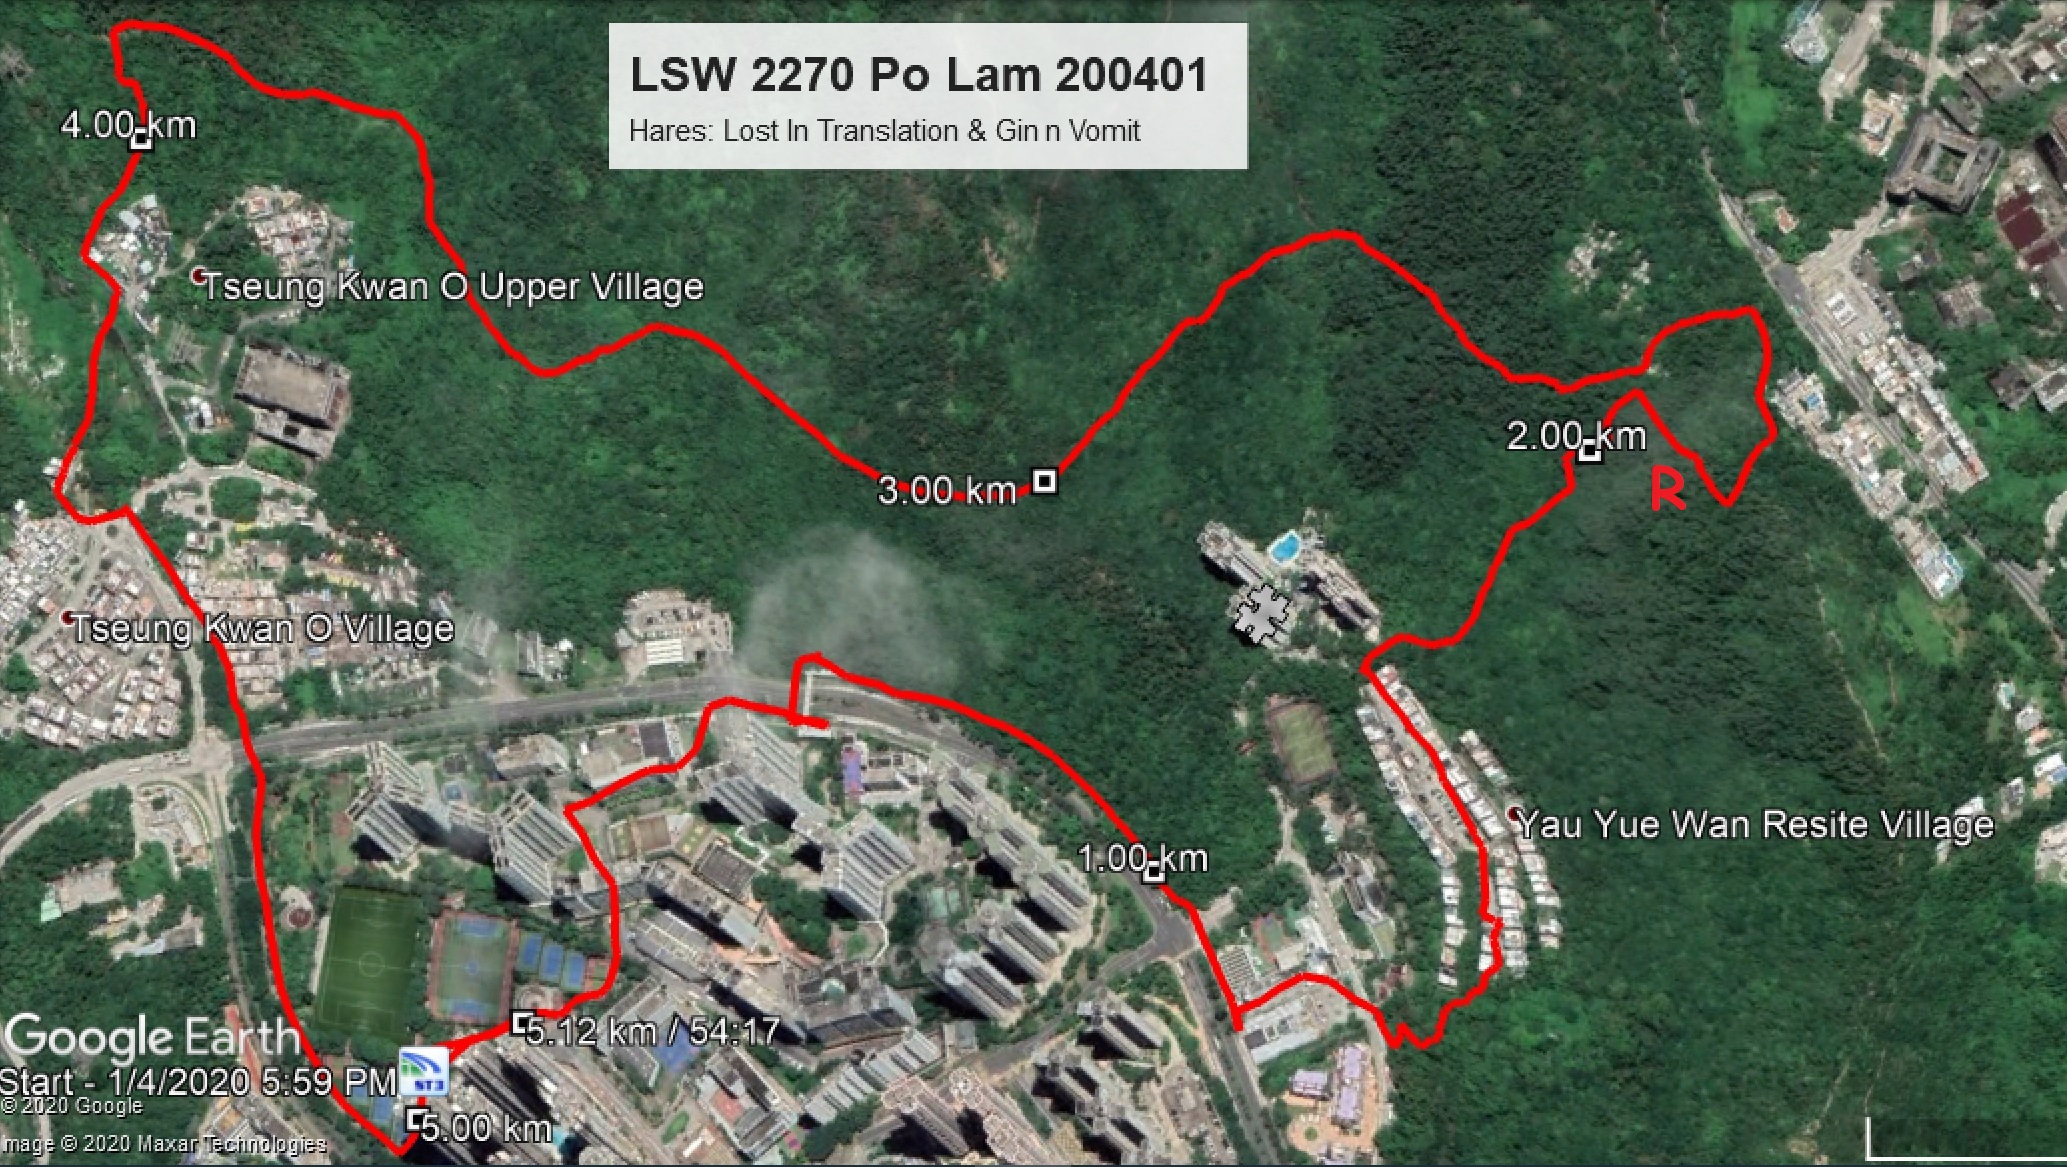 Po Lam 200401 5.12km 54mins